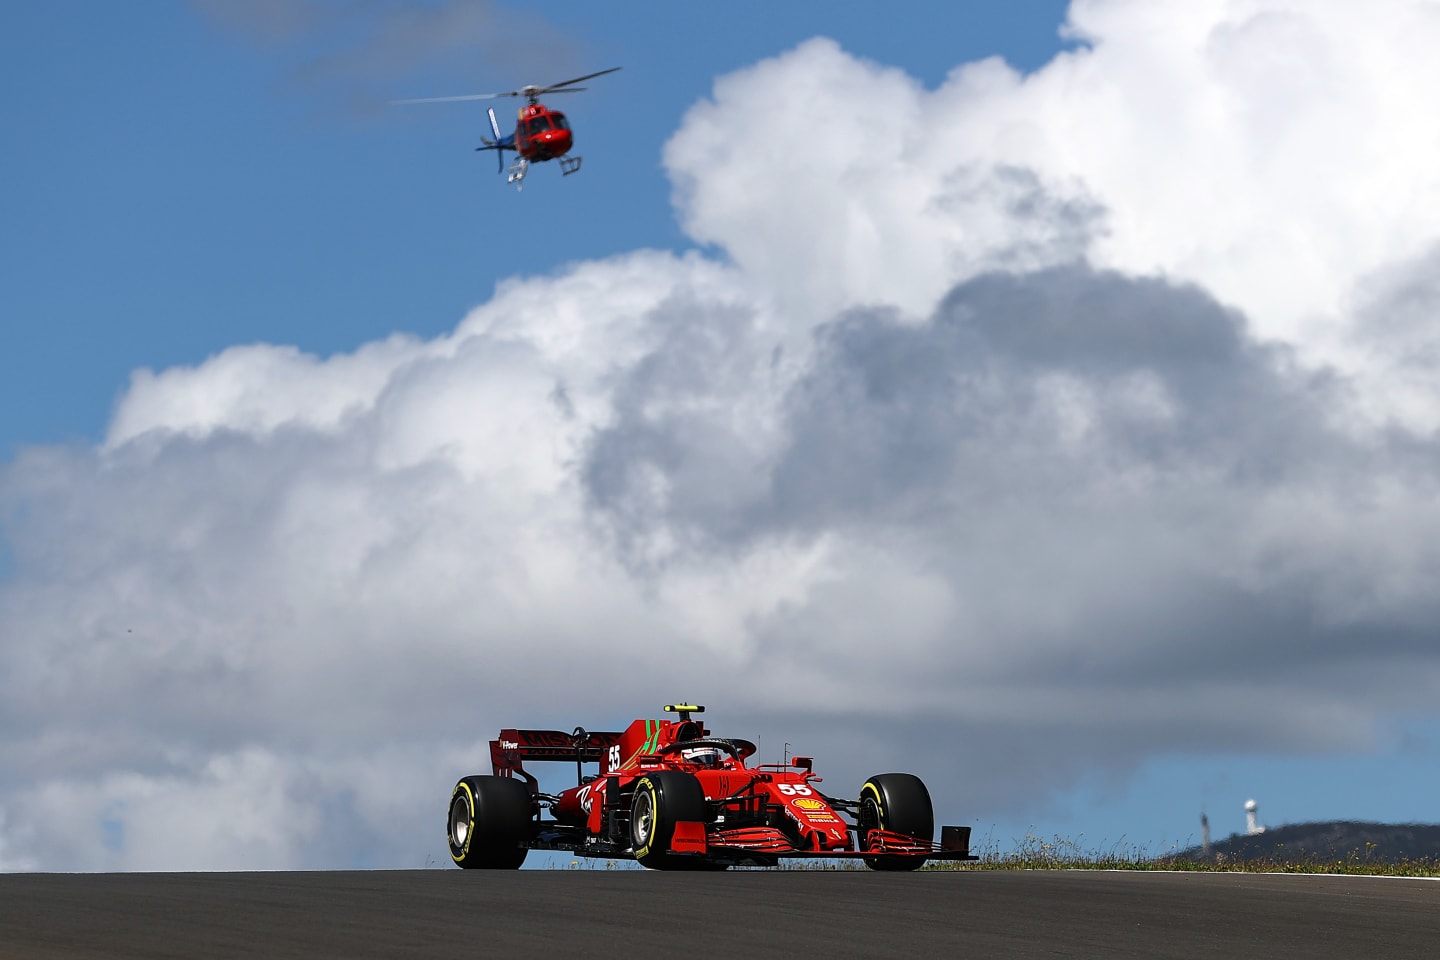 PORTIMAO, PORTUGAL - MAY 01: Carlos Sainz of Spain driving the (55) Scuderia Ferrari SF21 on track